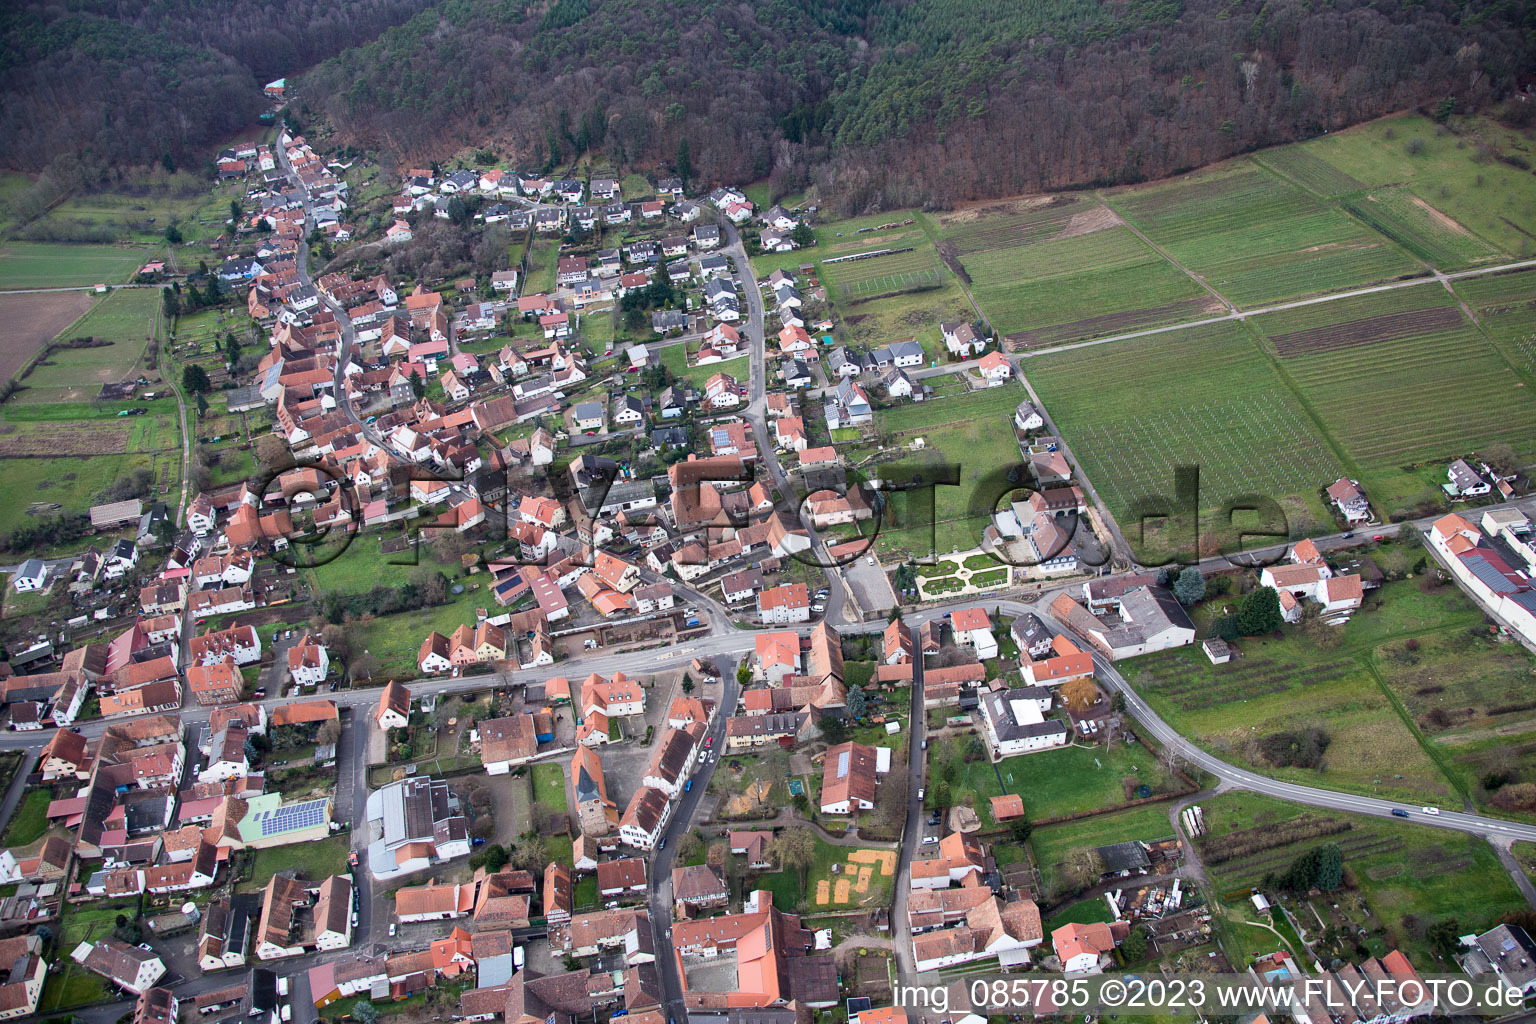 Oberotterbach im Bundesland Rheinland-Pfalz, Deutschland von der Drohne aus gesehen